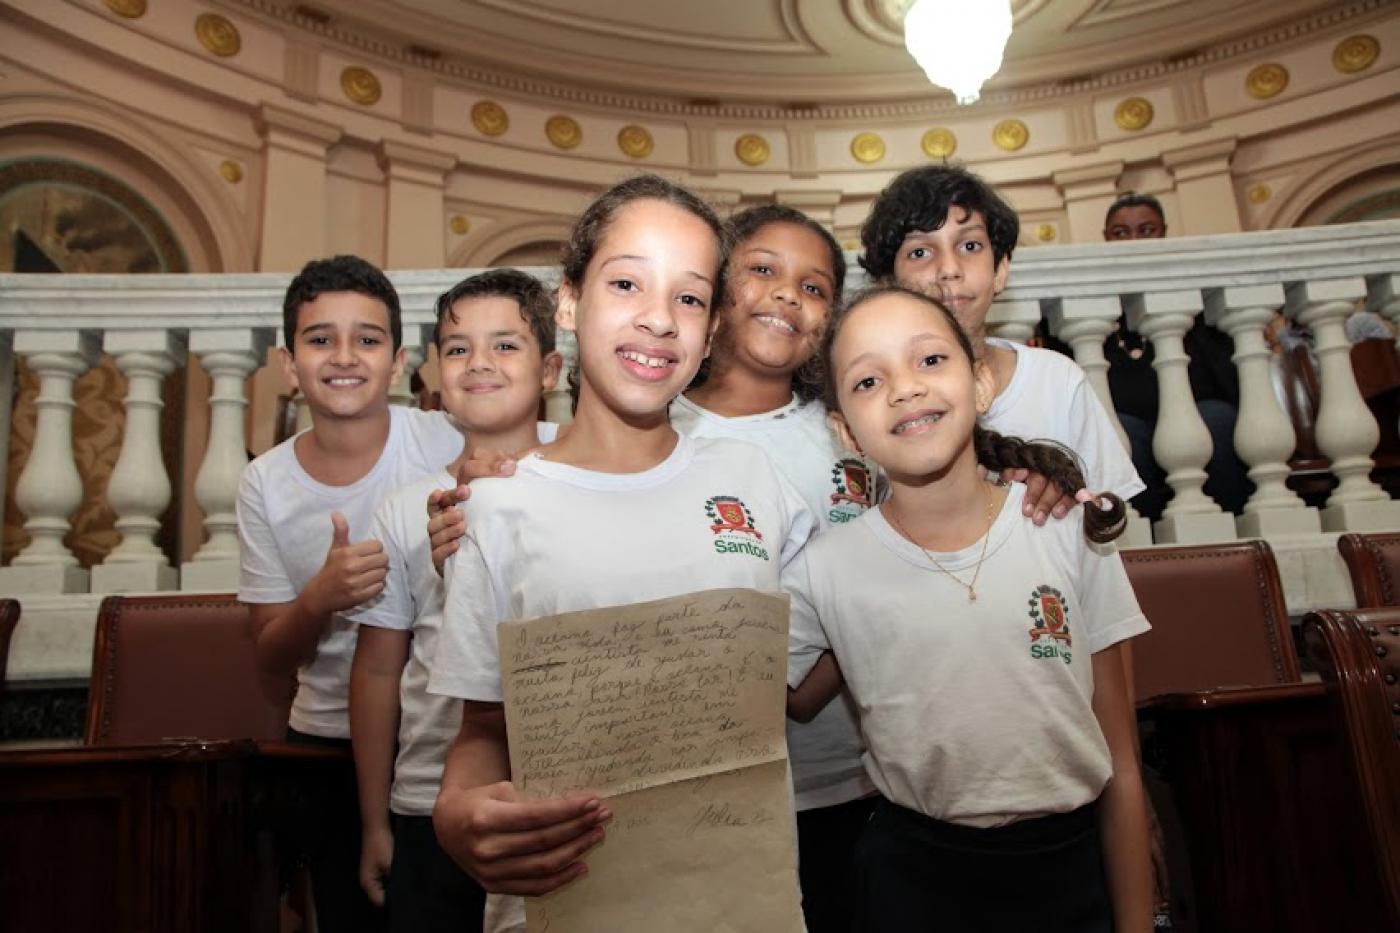 crianças com uniforme do município posam para foto sorrindo na sala princesa isabel. #paratodosverem